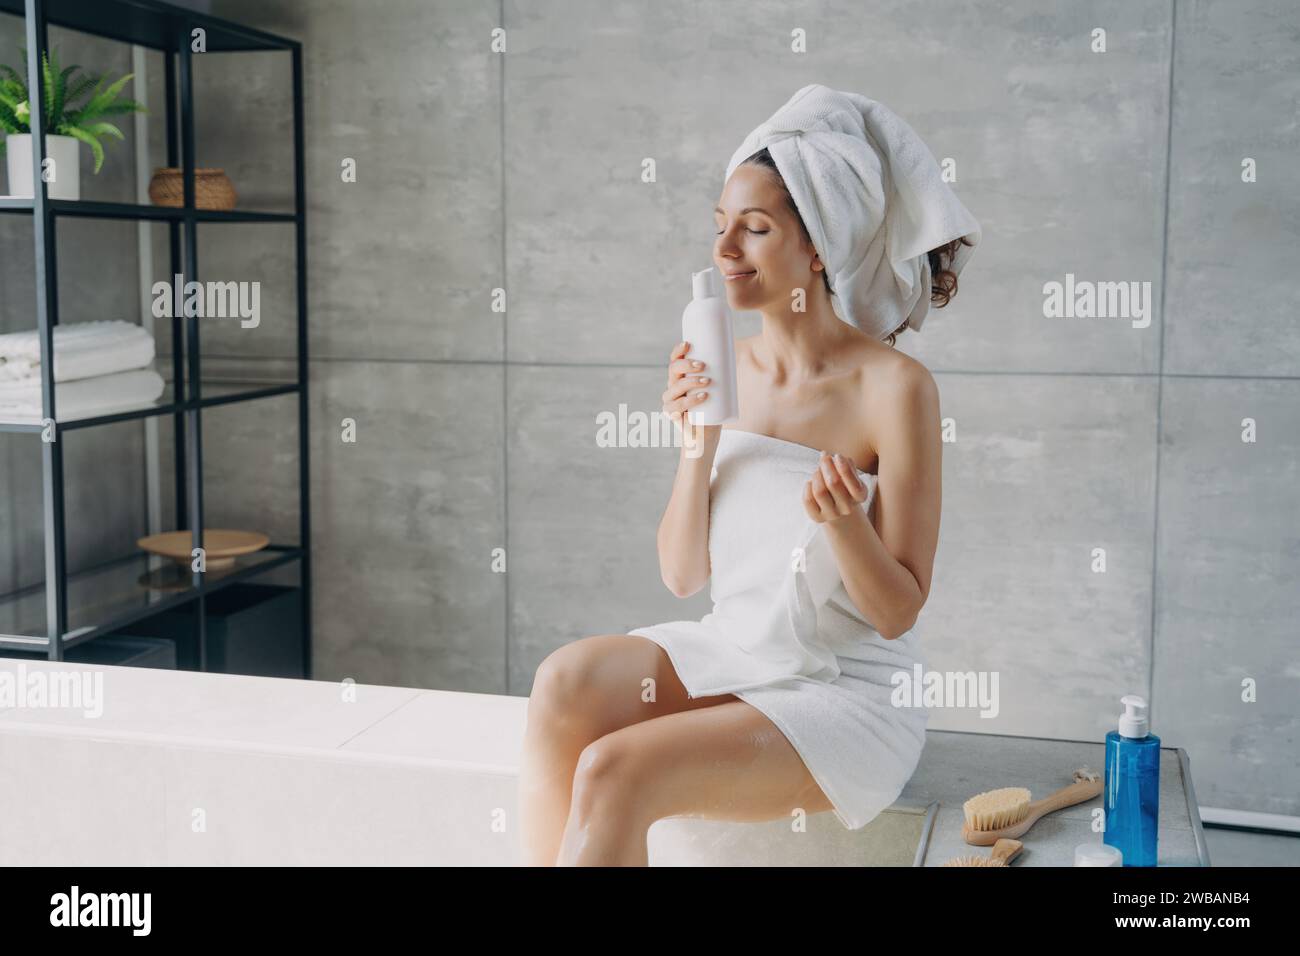 Donna contenta in un centro benessere avvolto in un asciugamano, che apprezza un prodotto per la cura della pelle dall'espressione serena in un ambiente moderno Foto Stock